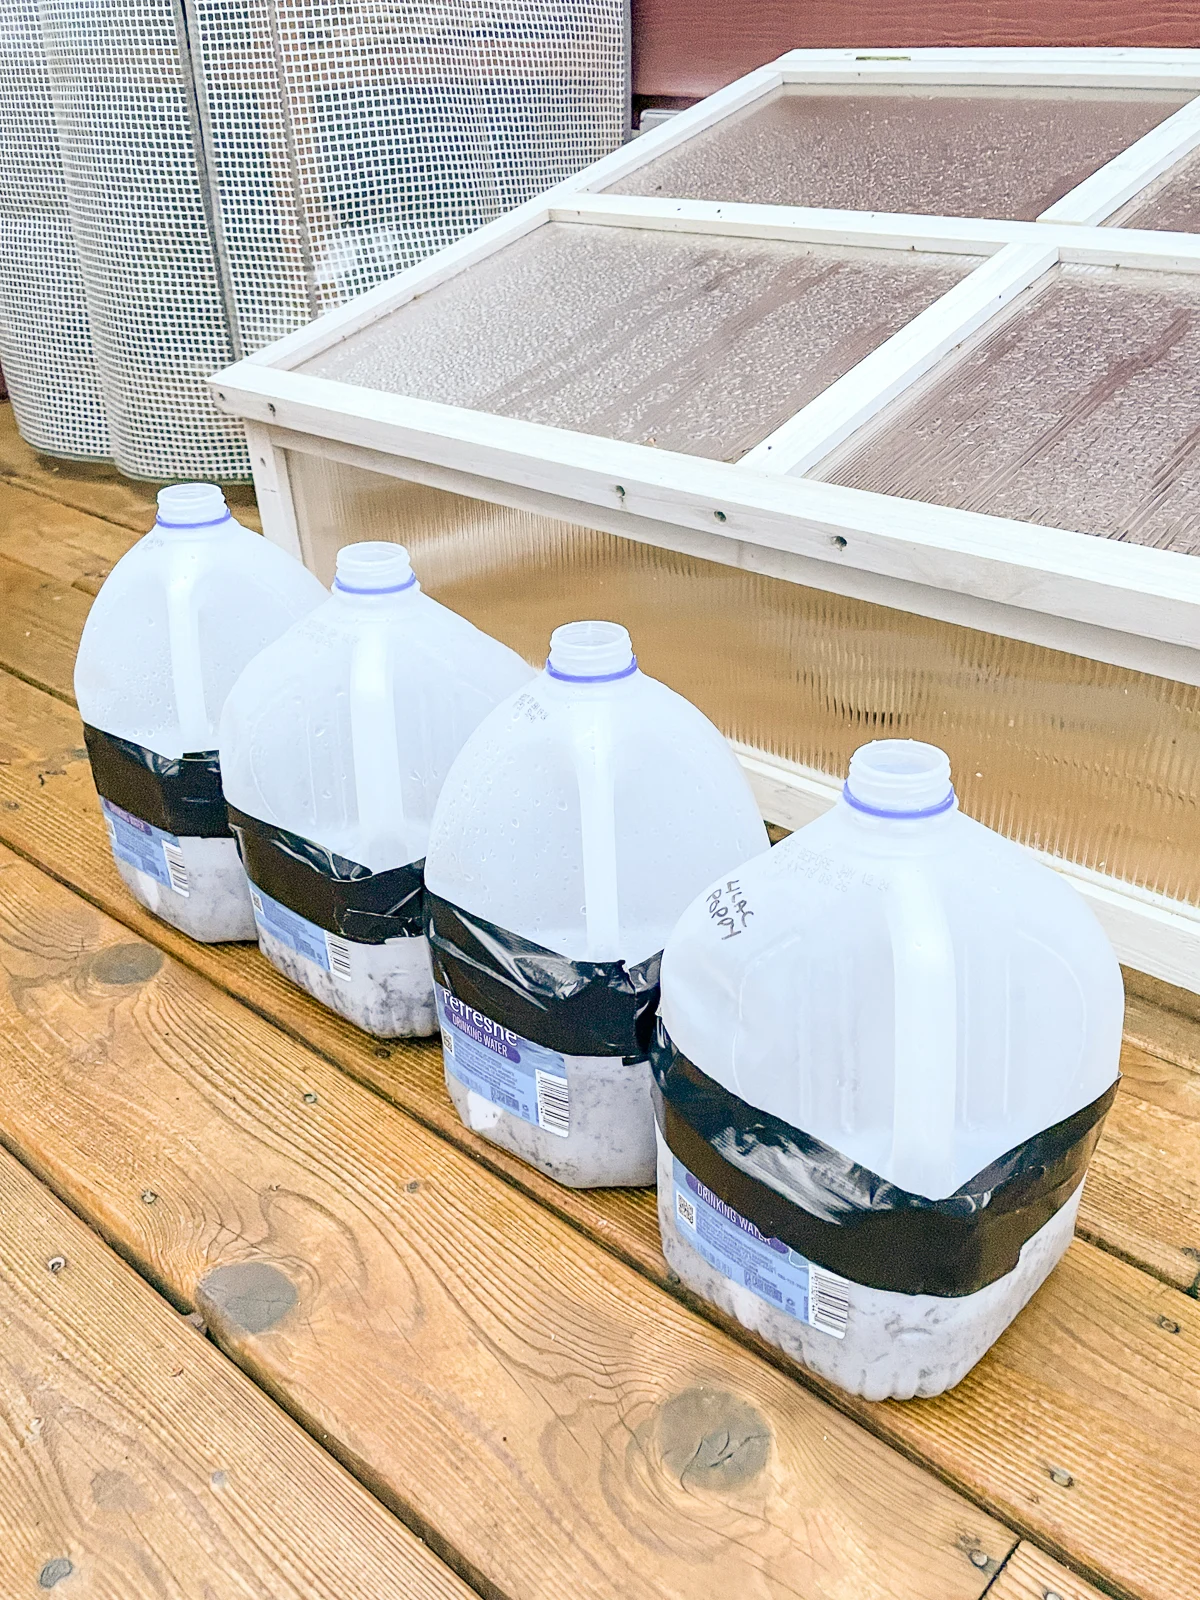 winter sowing in milk jugs outside